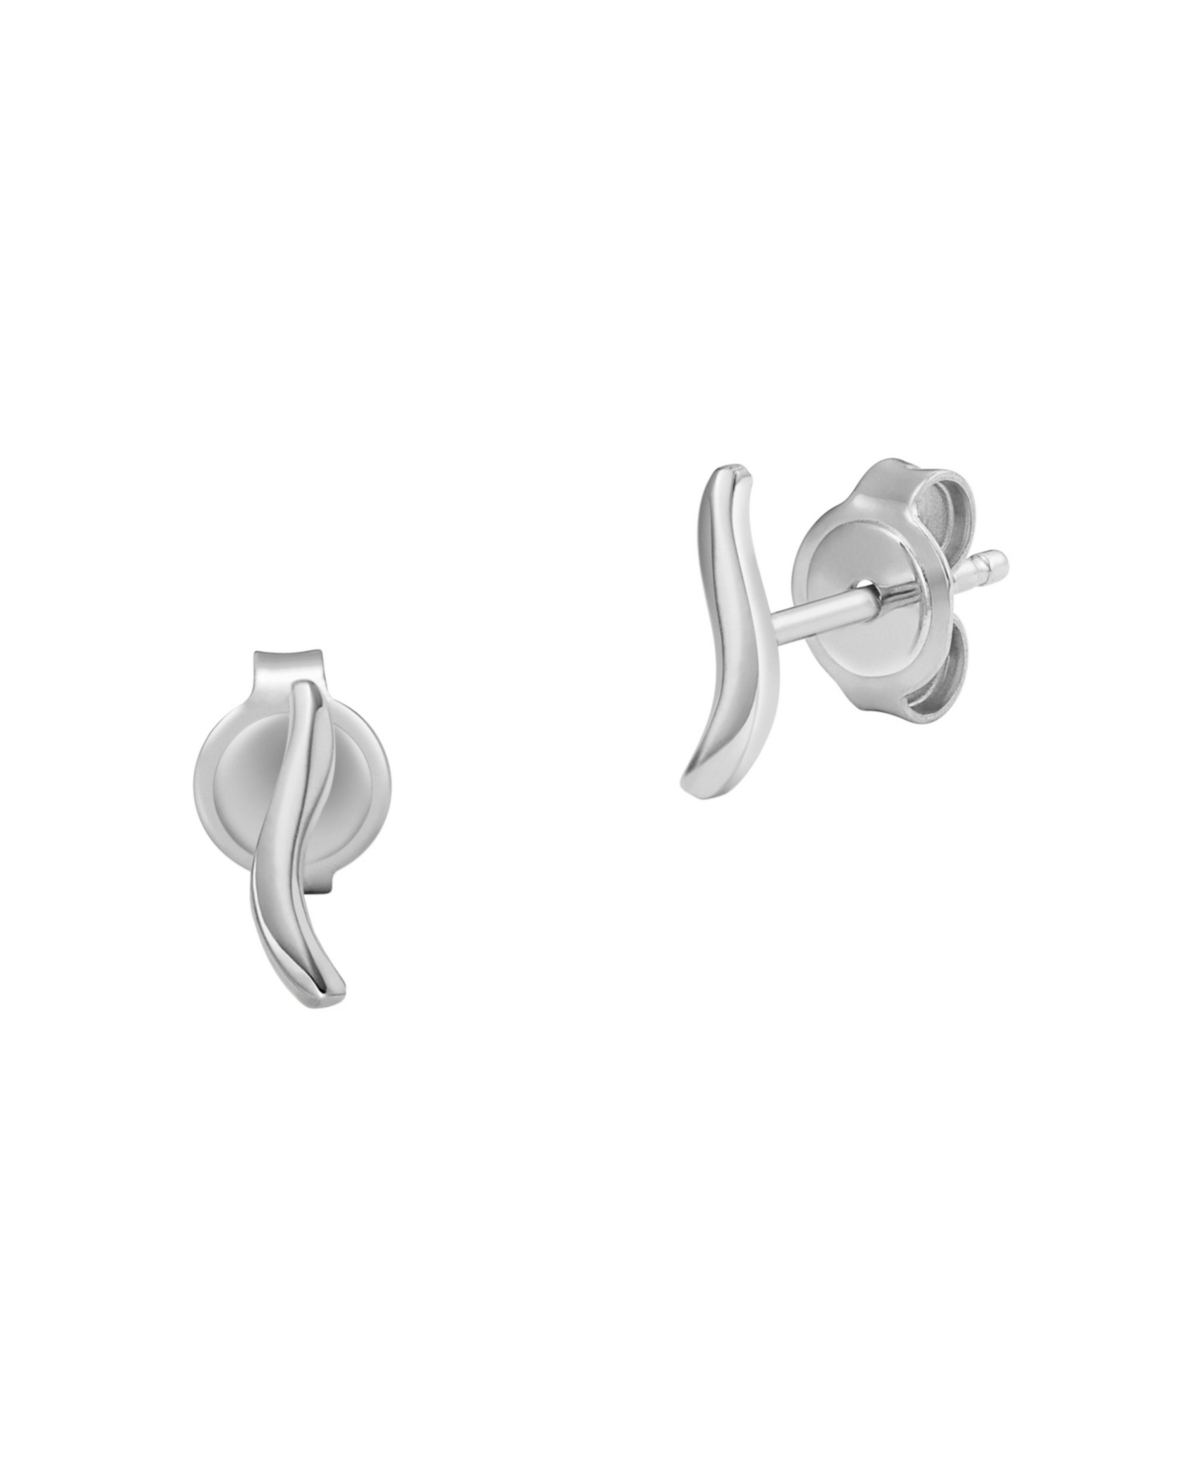 Women's Essential Waves Stainless Steel Stud Earrings - Silver